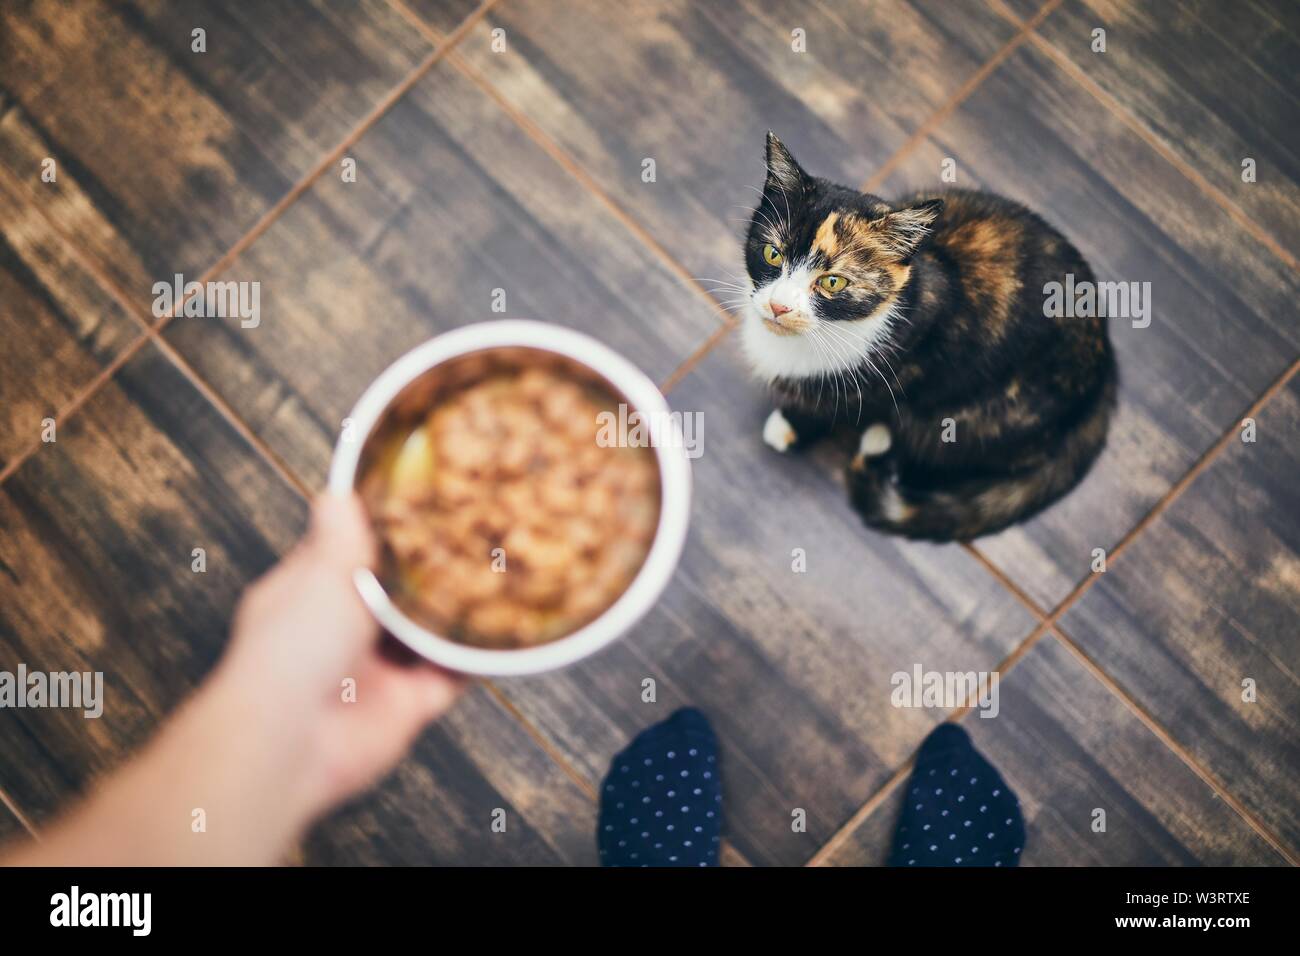 Das häusliche Leben mit Haustier. Mann hält Schüssel mit Fütterung für seine hungrige Katze. Stockfoto